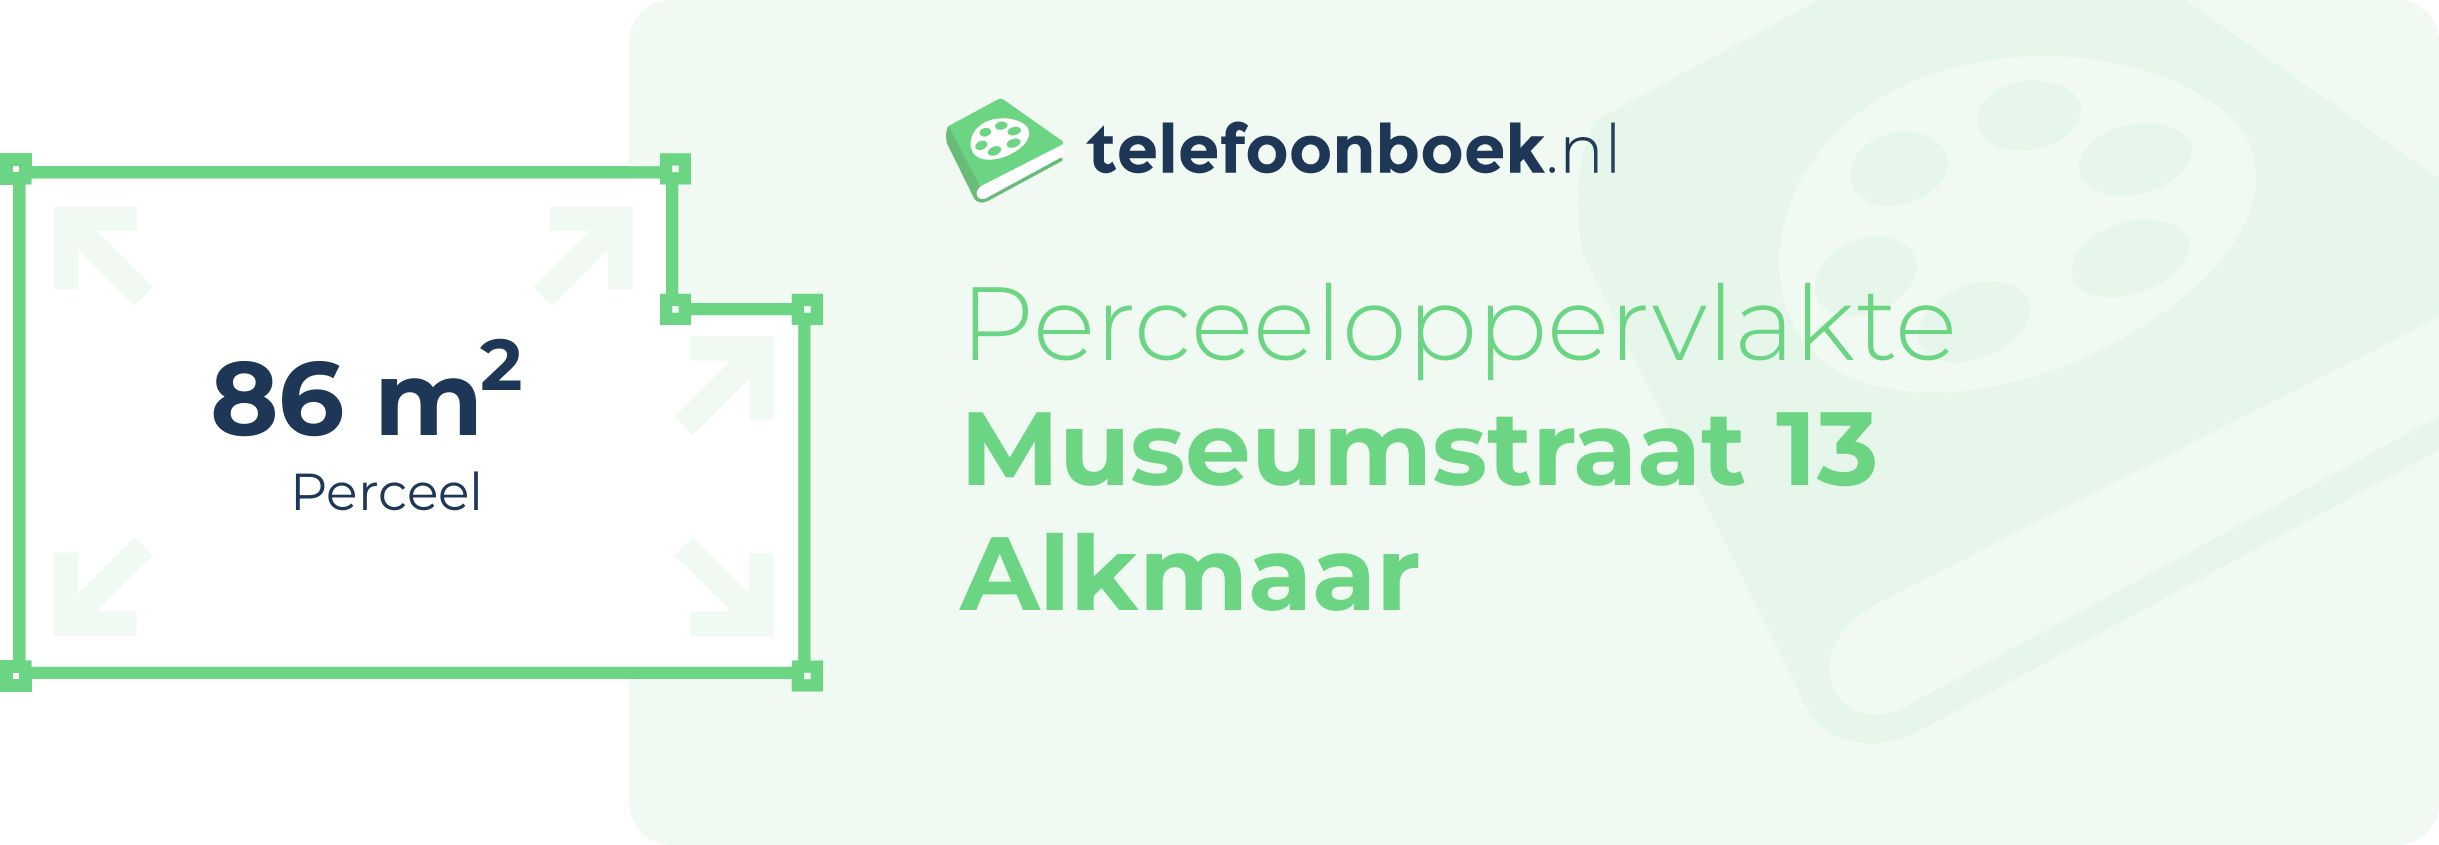 Perceeloppervlakte Museumstraat 13 Alkmaar